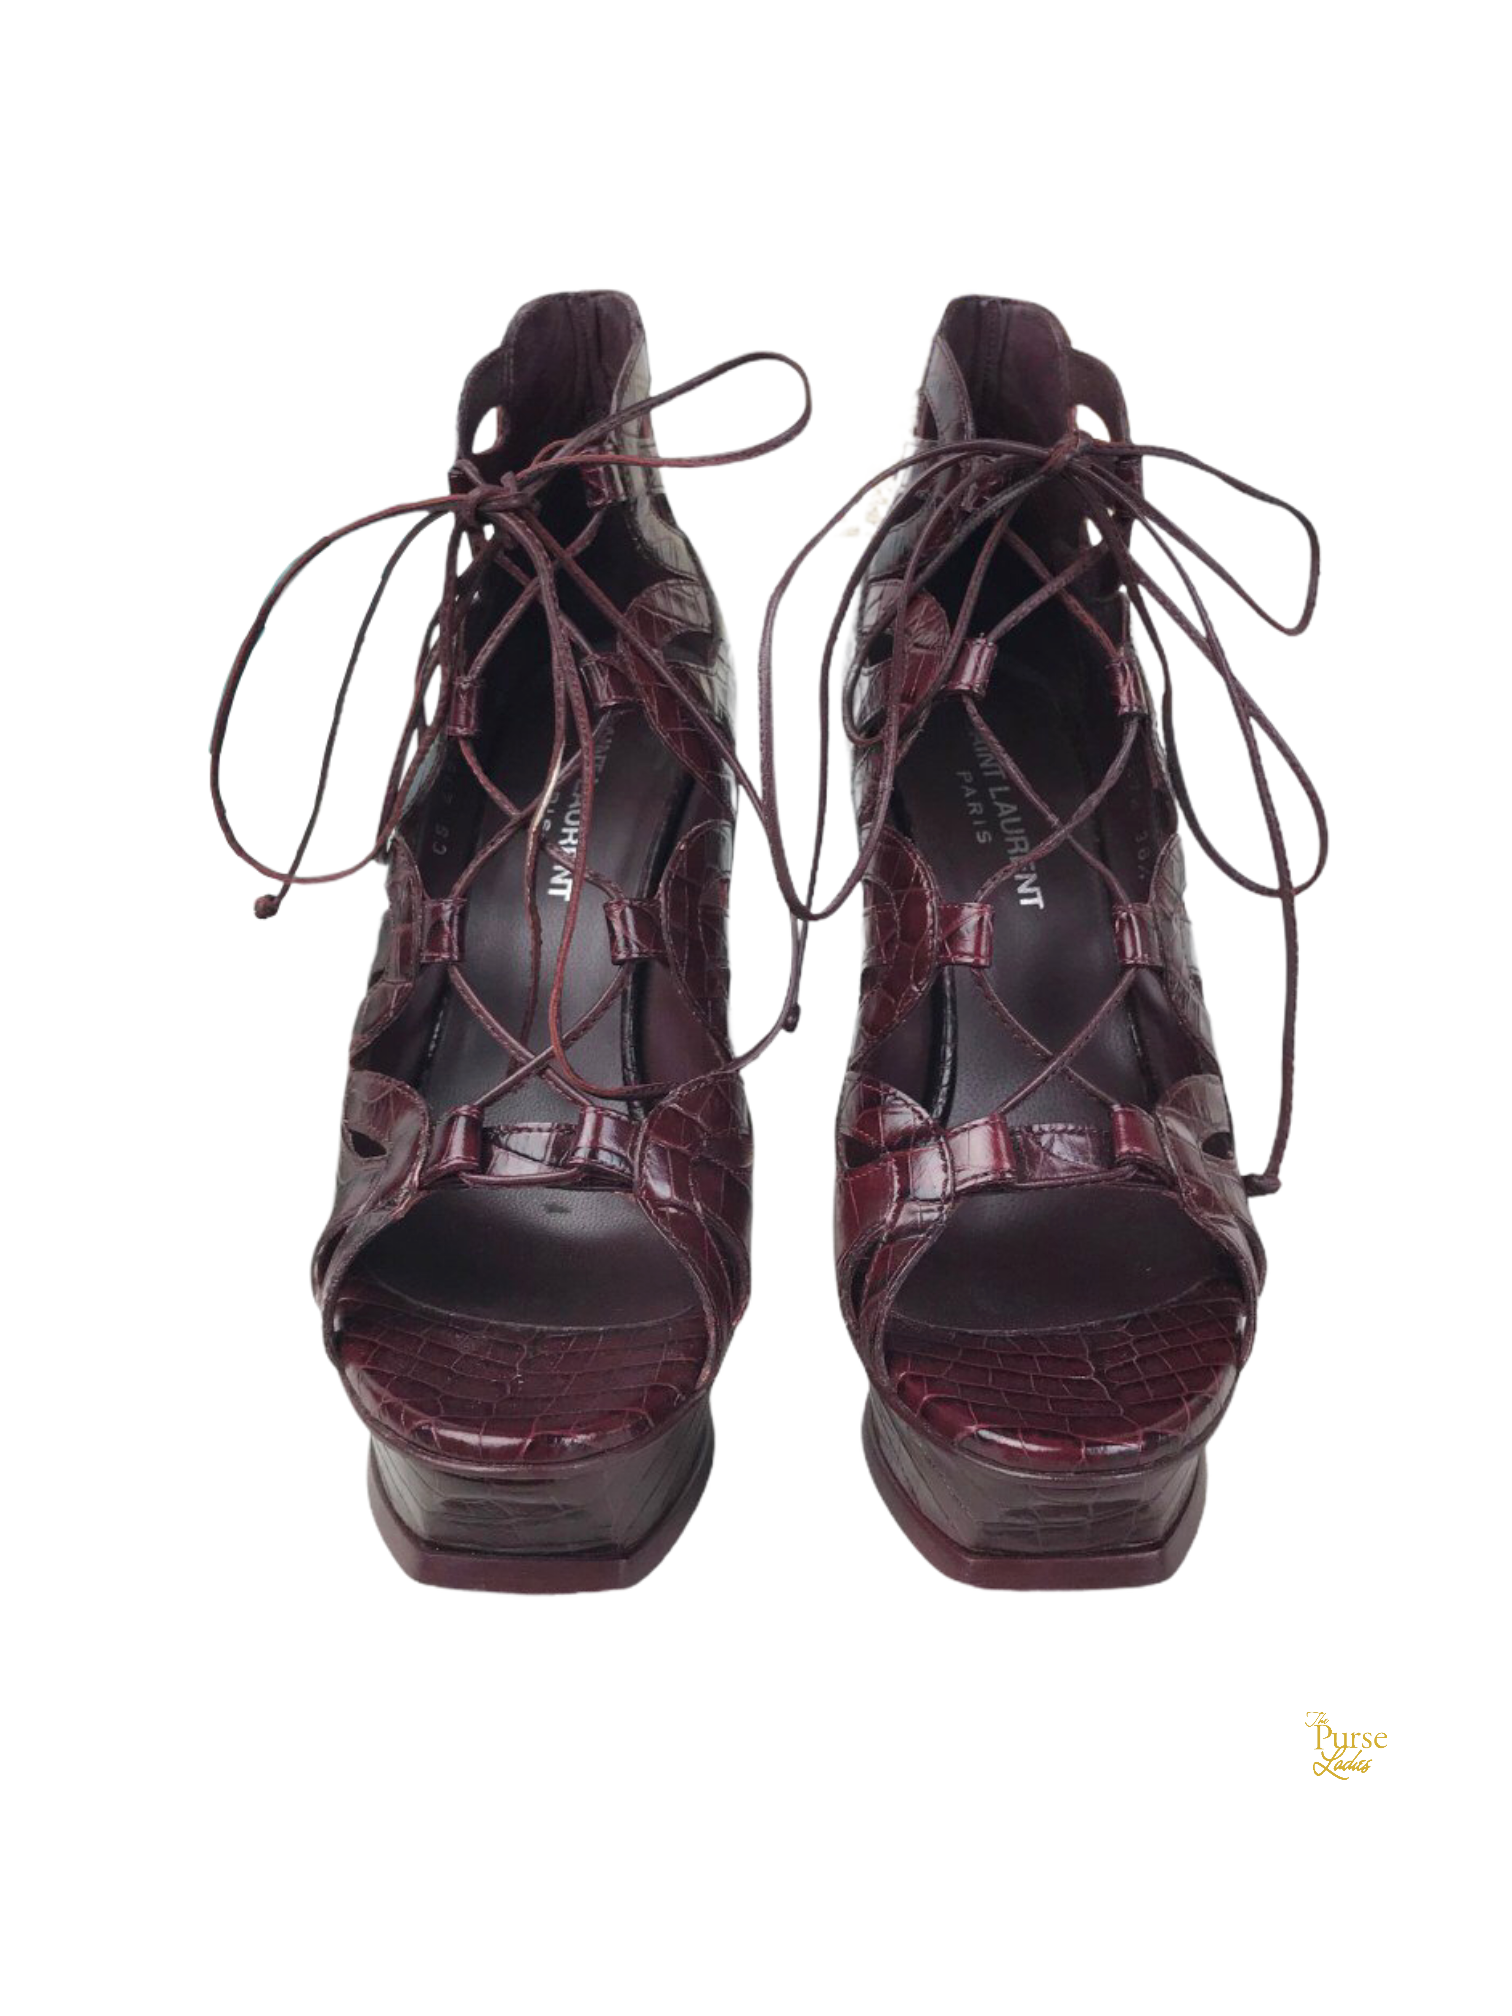 Authentic Ysl Saint Laurent Tribute Platform Sandal Shoes